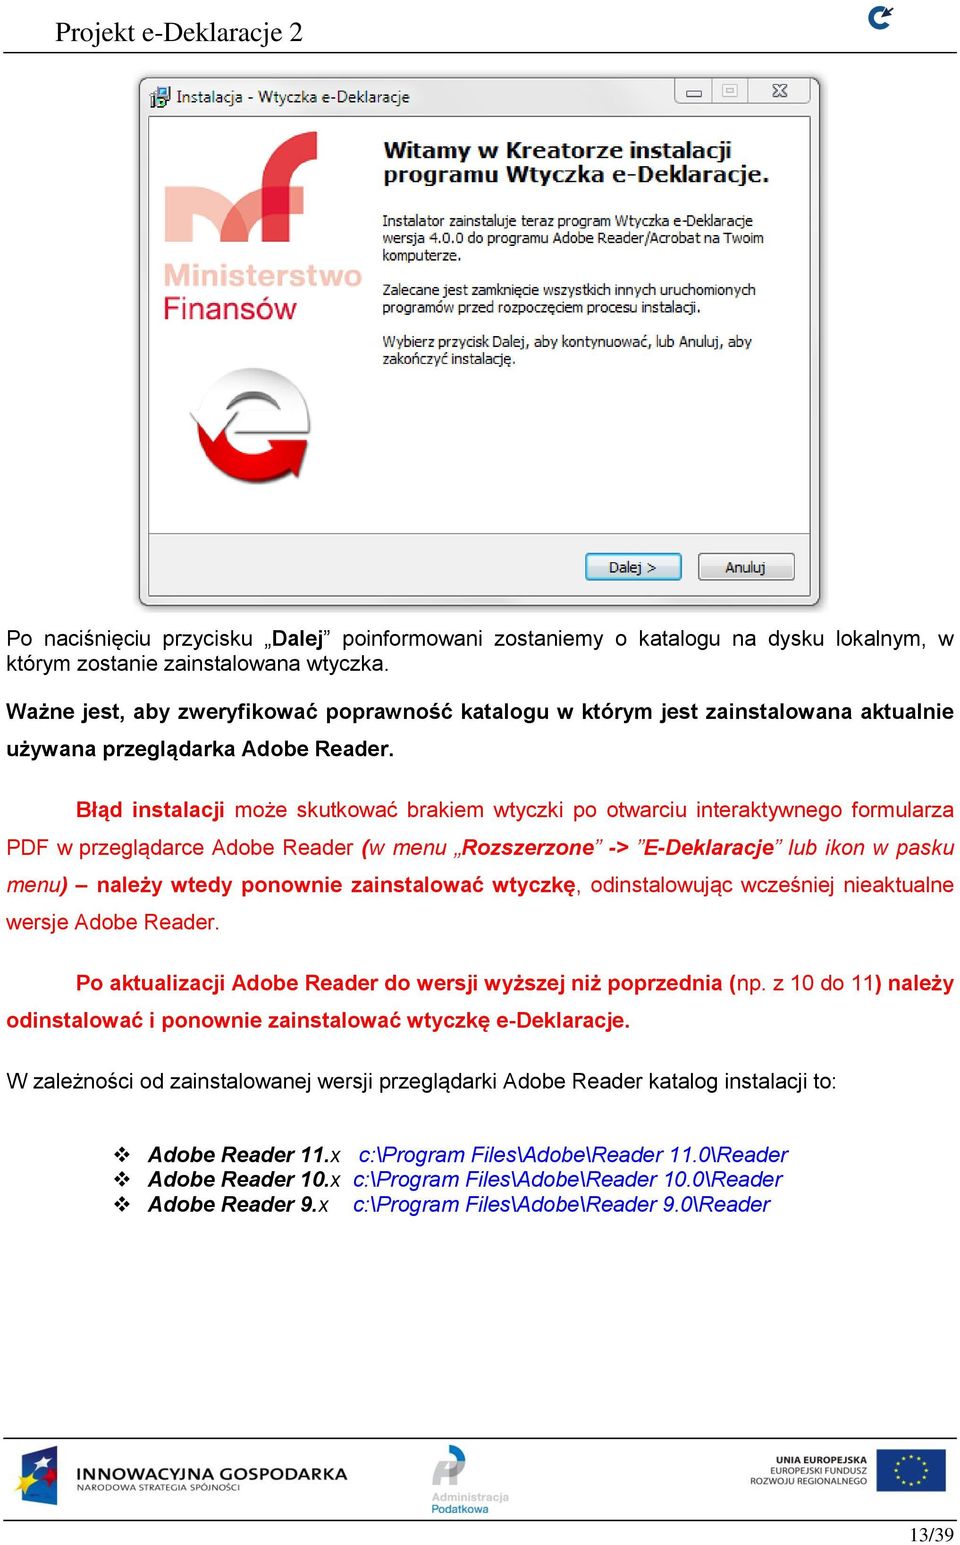 Błąd instalacji może skutkować brakiem wtyczki po otwarciu interaktywnego formularza PDF w przeglądarce Adobe Reader (w menu Rozszerzone -> E-Deklaracje lub ikon w pasku menu) należy wtedy ponownie